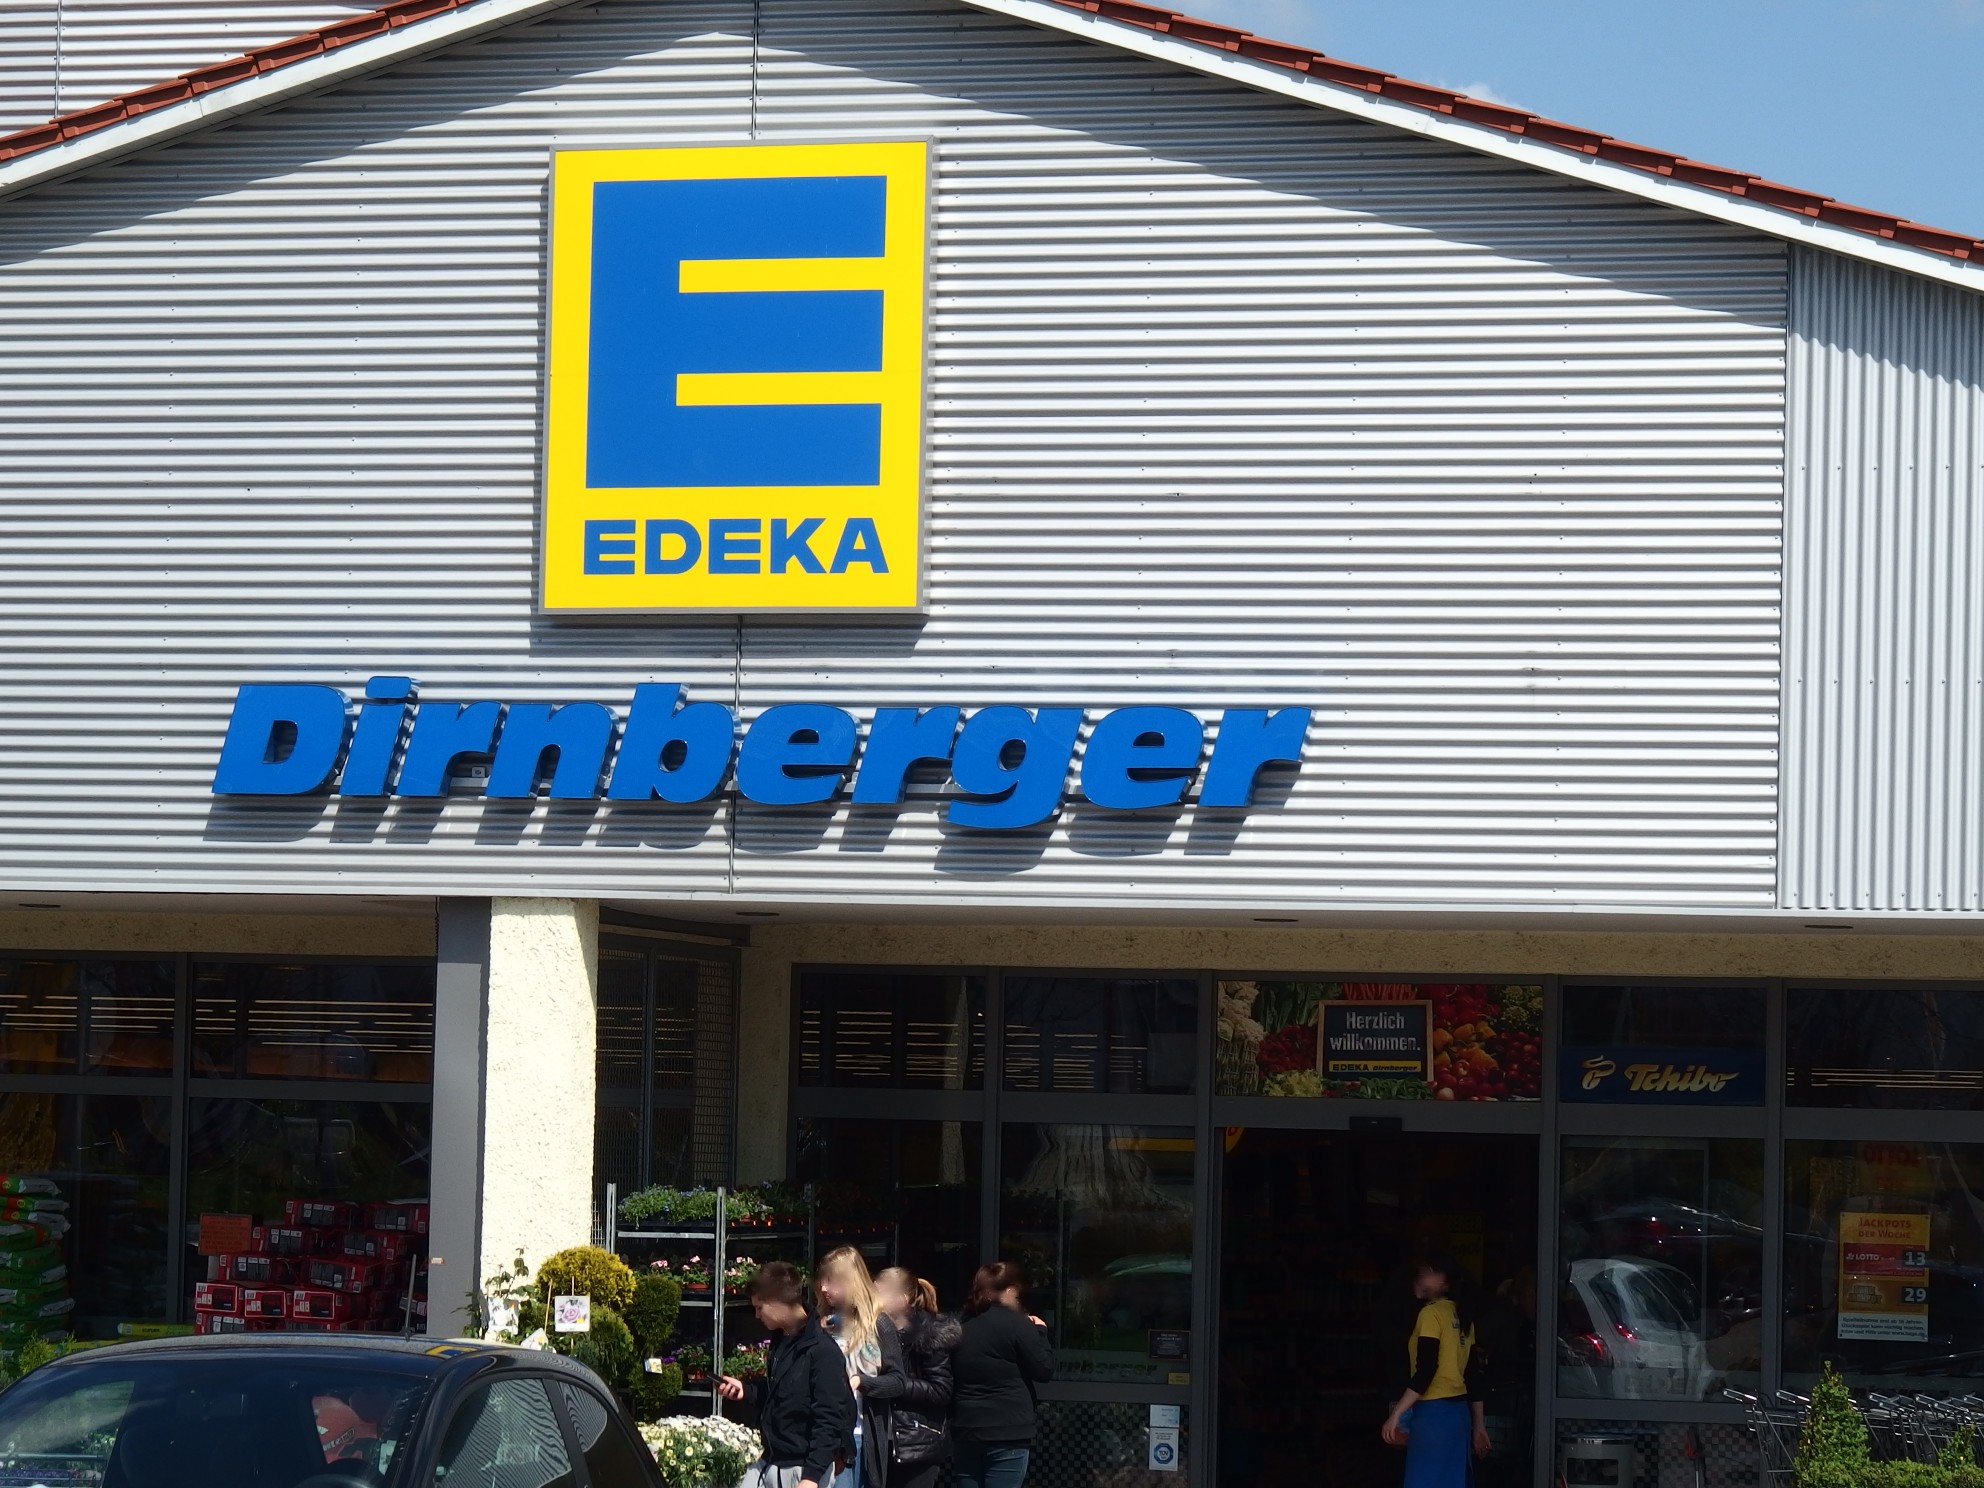 Dieser E aktiv markt ist eigentlich bekannt unter EDEKA Dirnberger